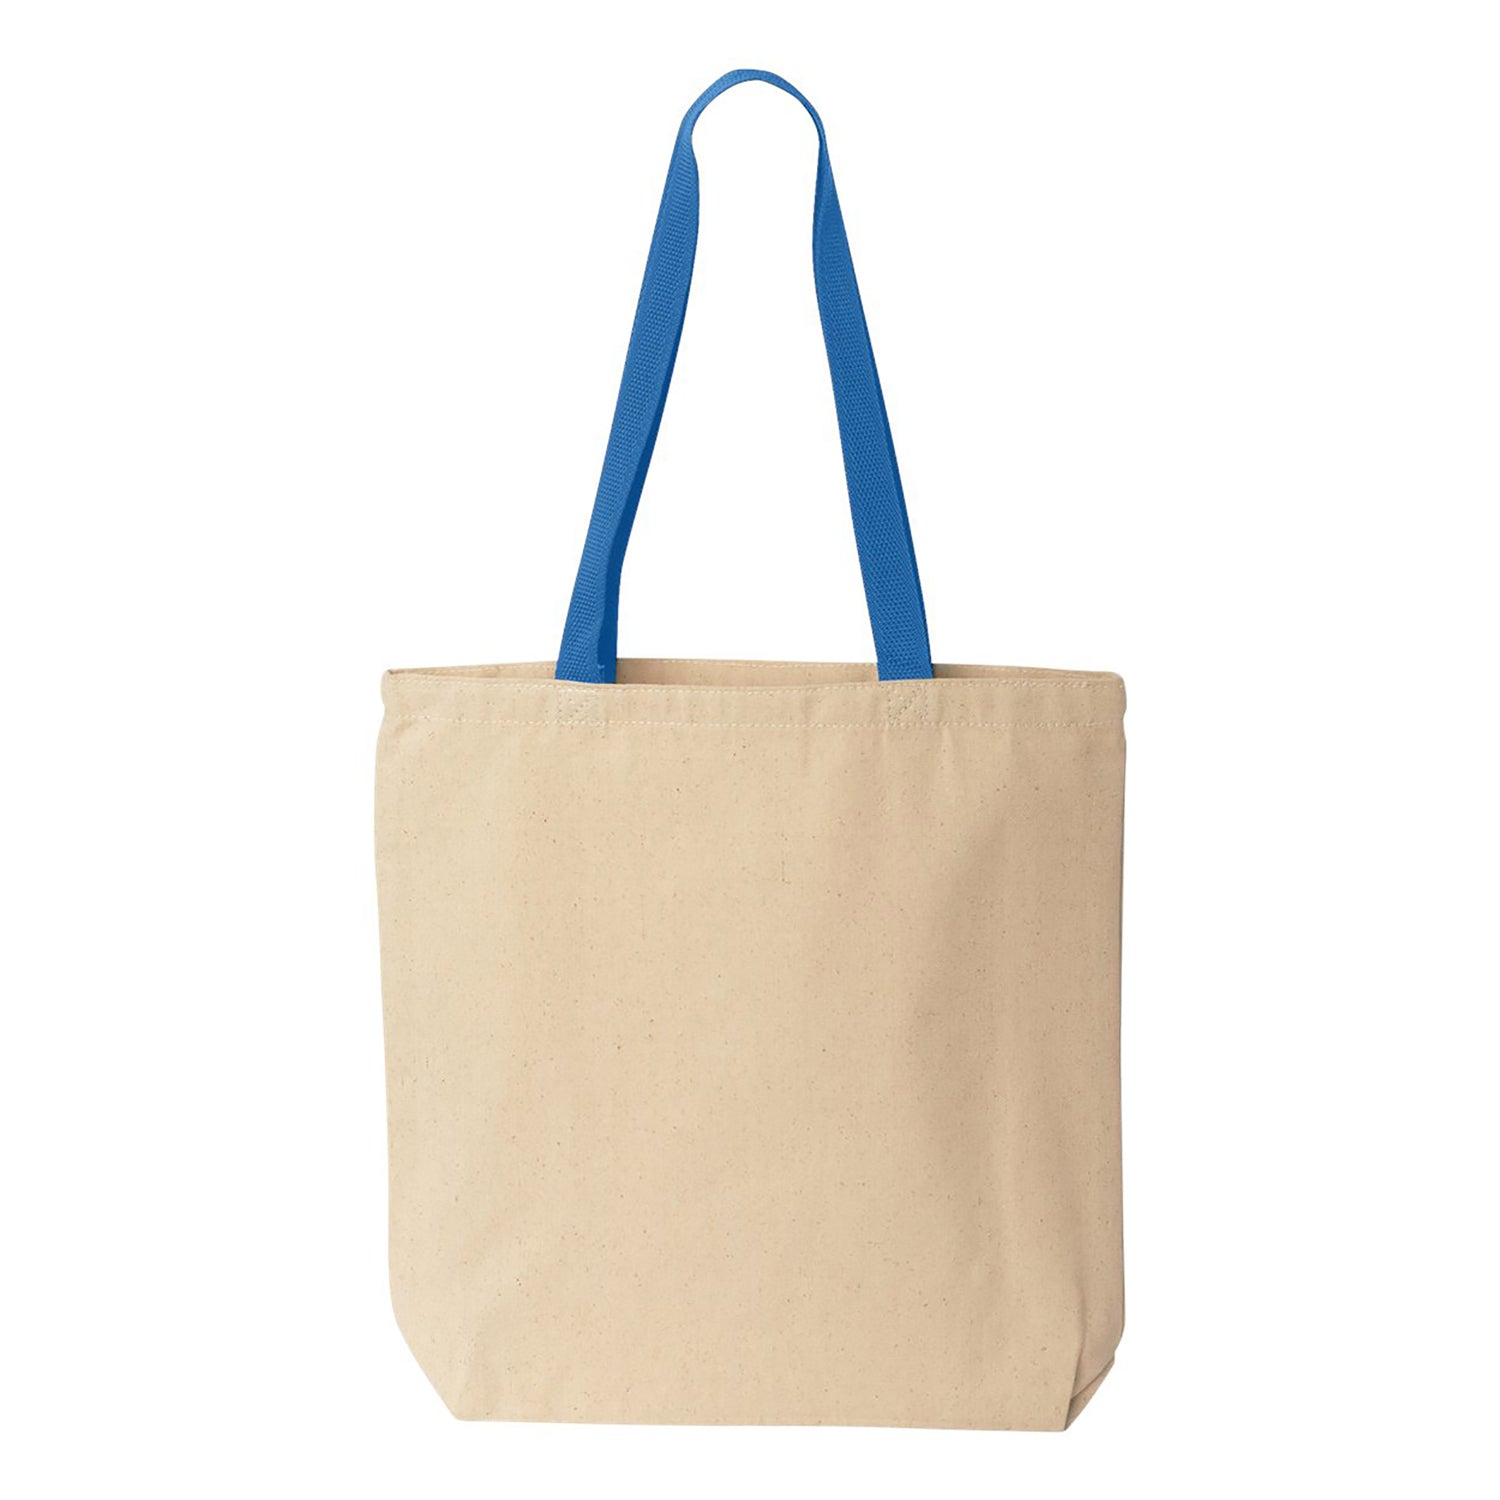 10 oz. Colored Handle Cotton Canvas Reusable Shopping Bag